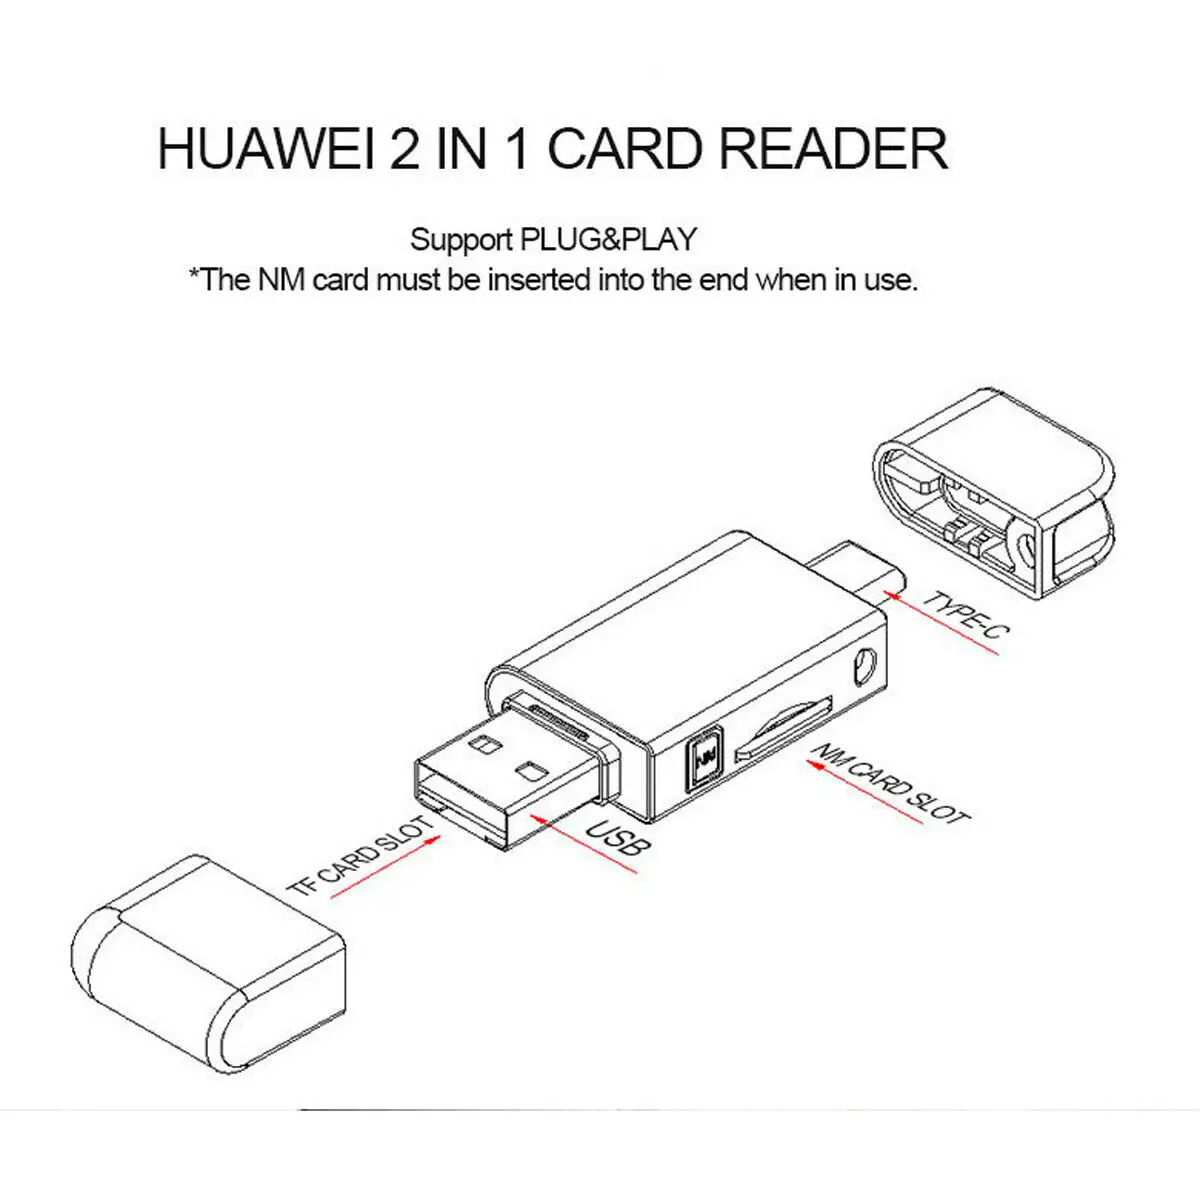 USB-C типа C к нм Nano карта памяти и TF Micro SD кард-ридер для huawei легко носить с собой использовать AA4571